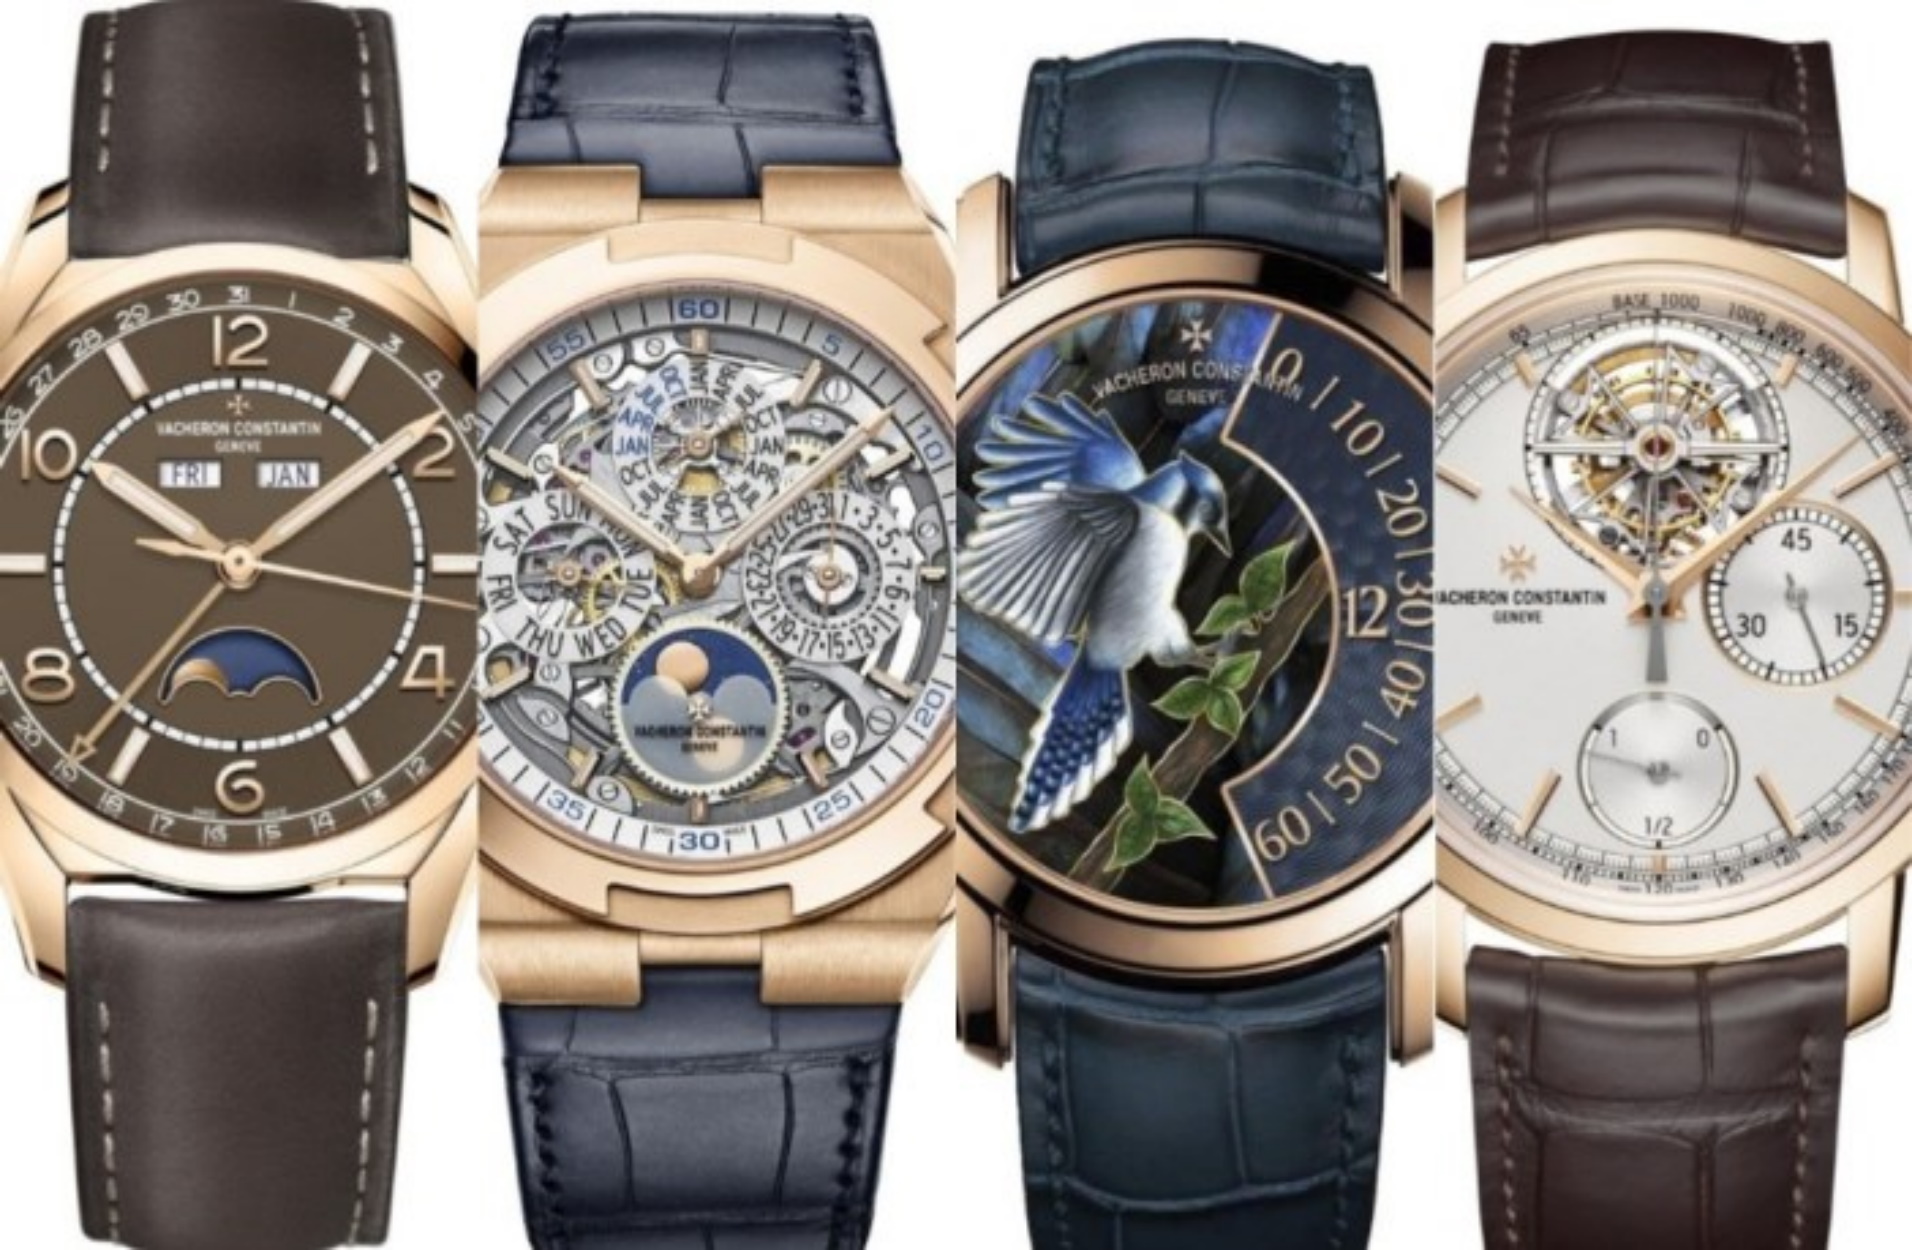 Ο θρυλικός οίκος Vacheron Constantin μόλις αποκάλυψε 11 νέα απίστευτα ρολόγια!